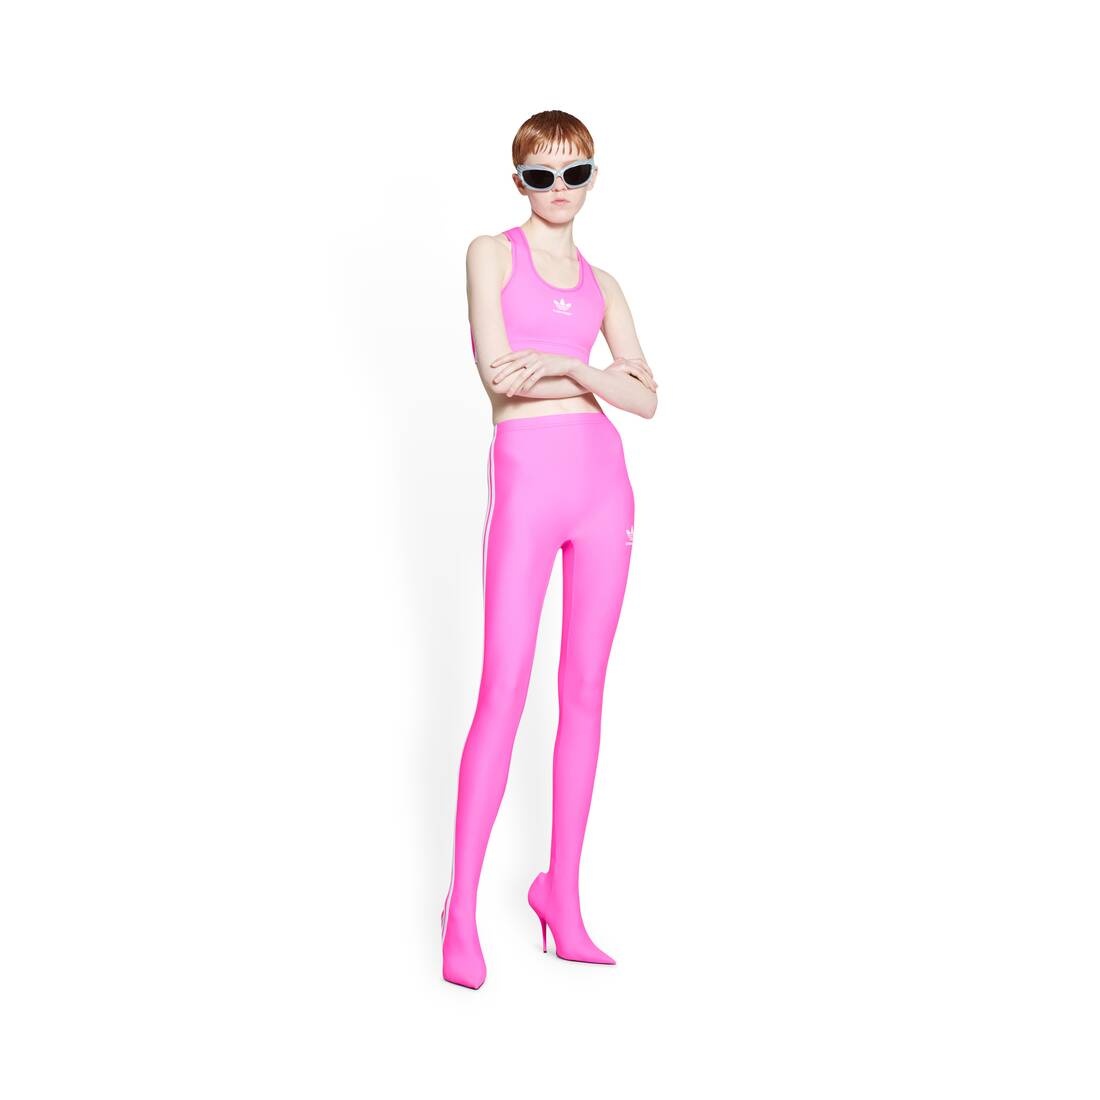 BALENCIAGA Women's Balenciaga / Adidas Athletic Bra in Neon Pink